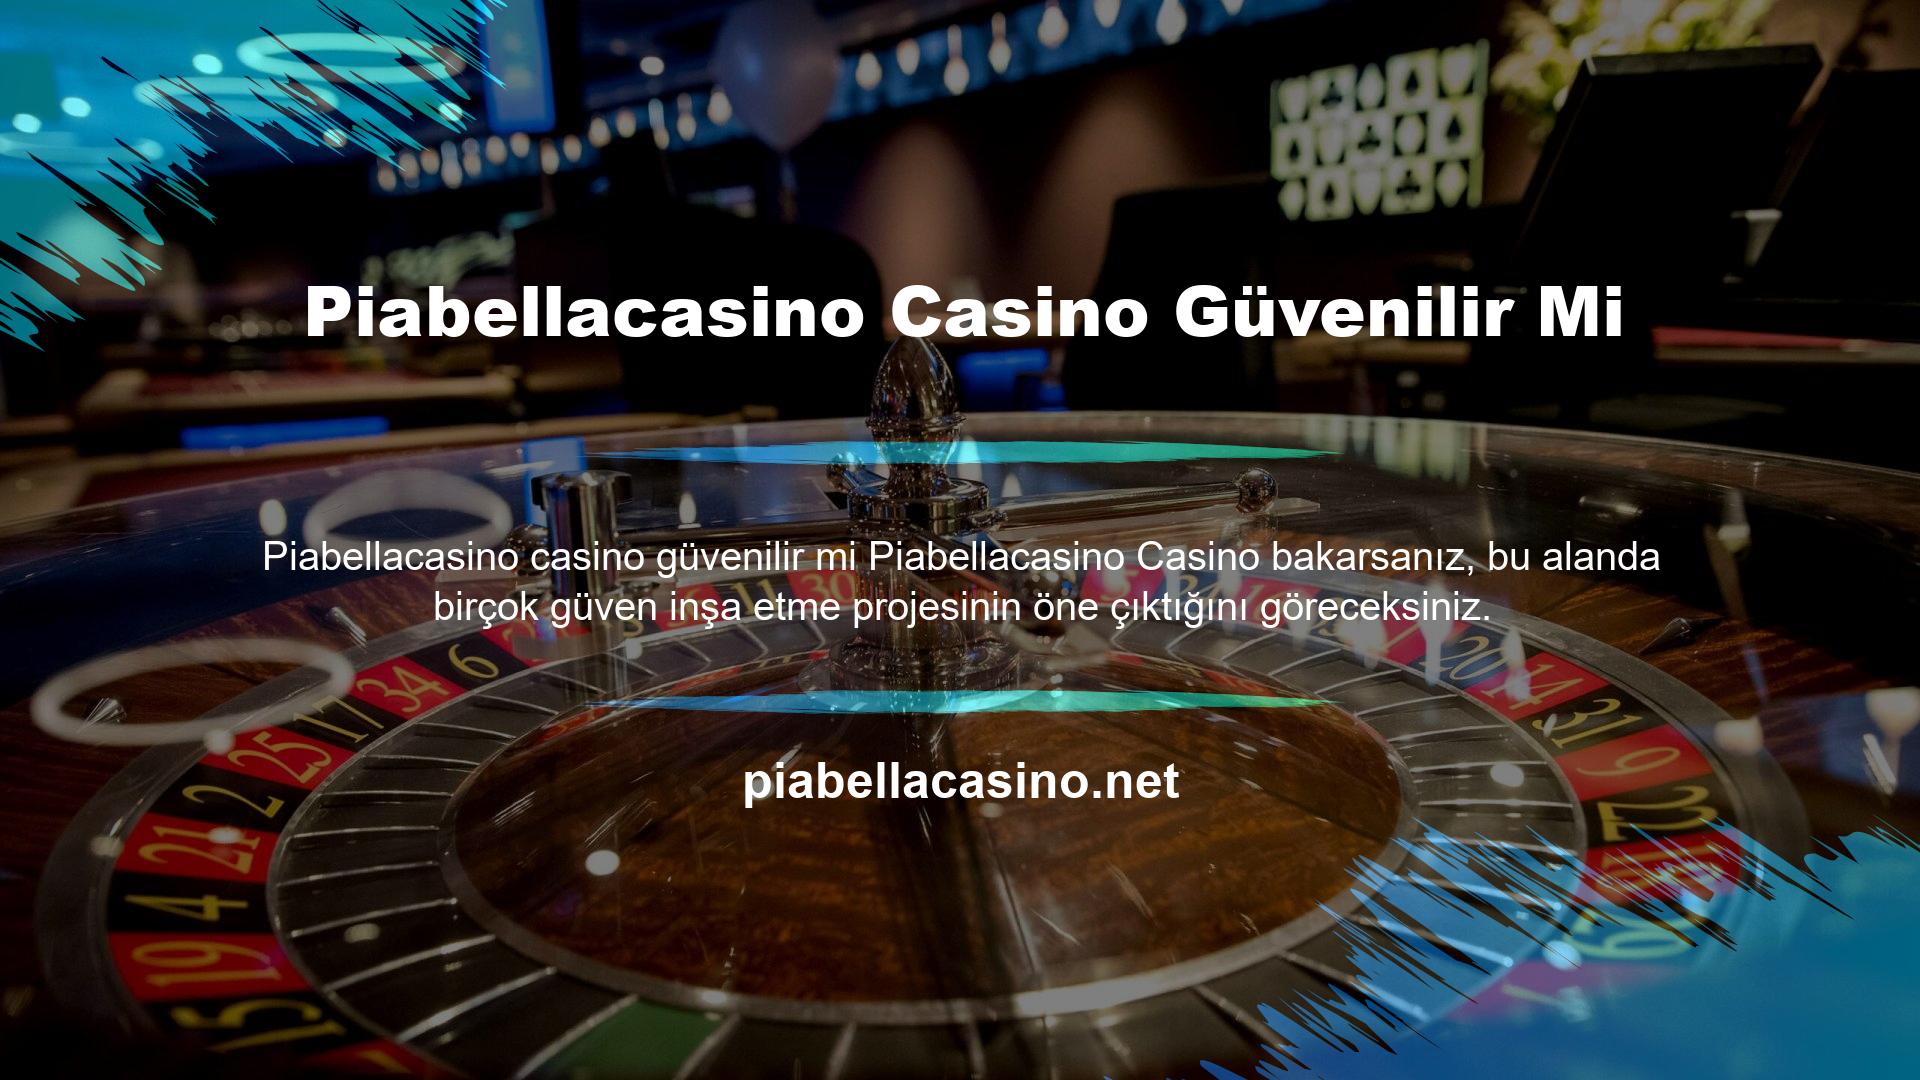 Genellikle çok popüler bir casino web sitesine rastlarsınız